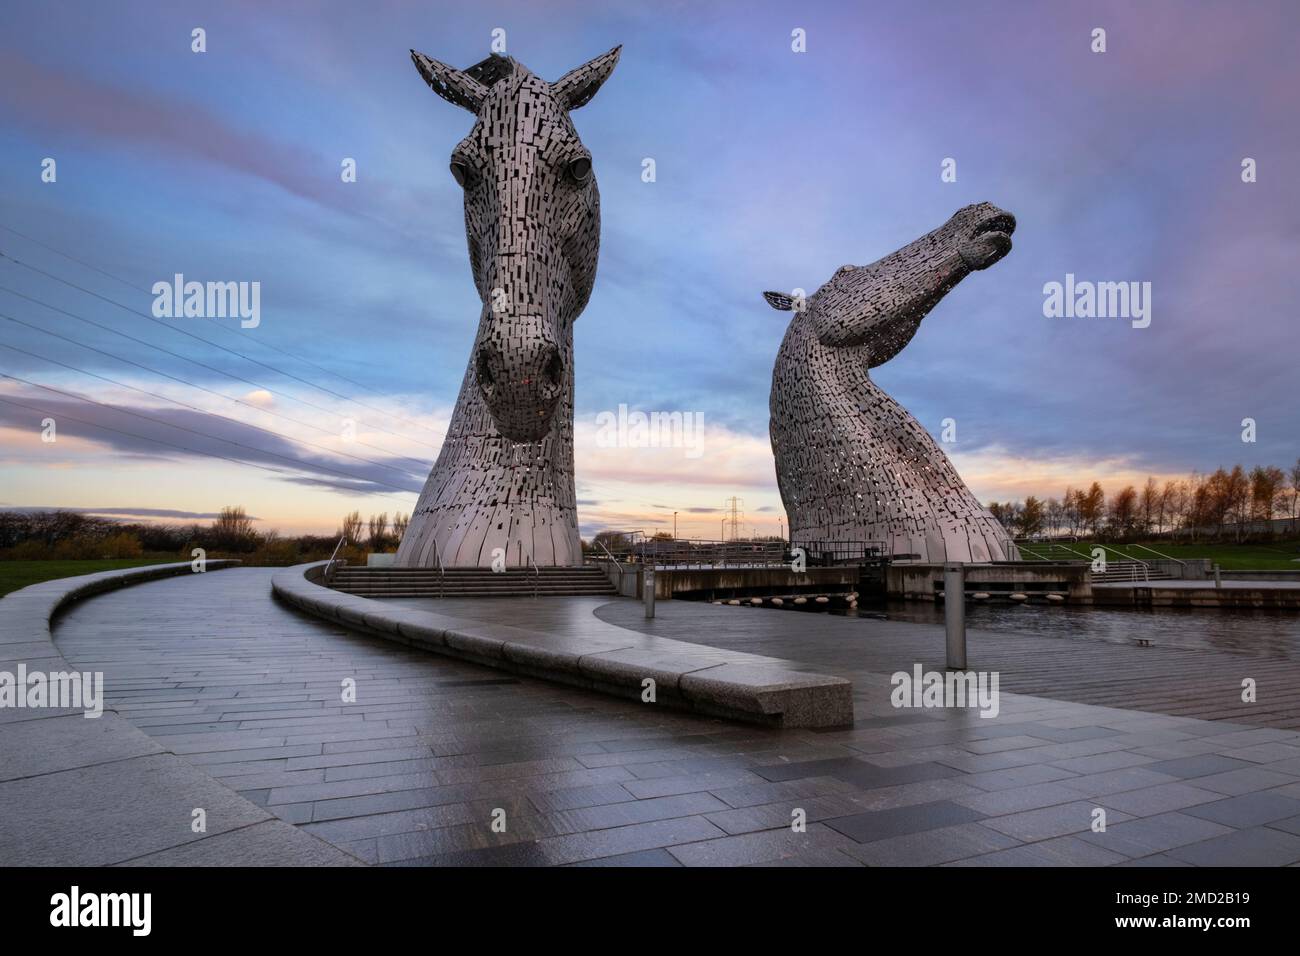 Les Kelpies, près de Falkirk, en Écosse, au Royaume-Uni les Kelpies sont des sculptures à tête de cheval de 30 mètres de haut (98 pieds) représentant des kelpies ou des spiritueux d'eau qui changent de forme, Banque D'Images